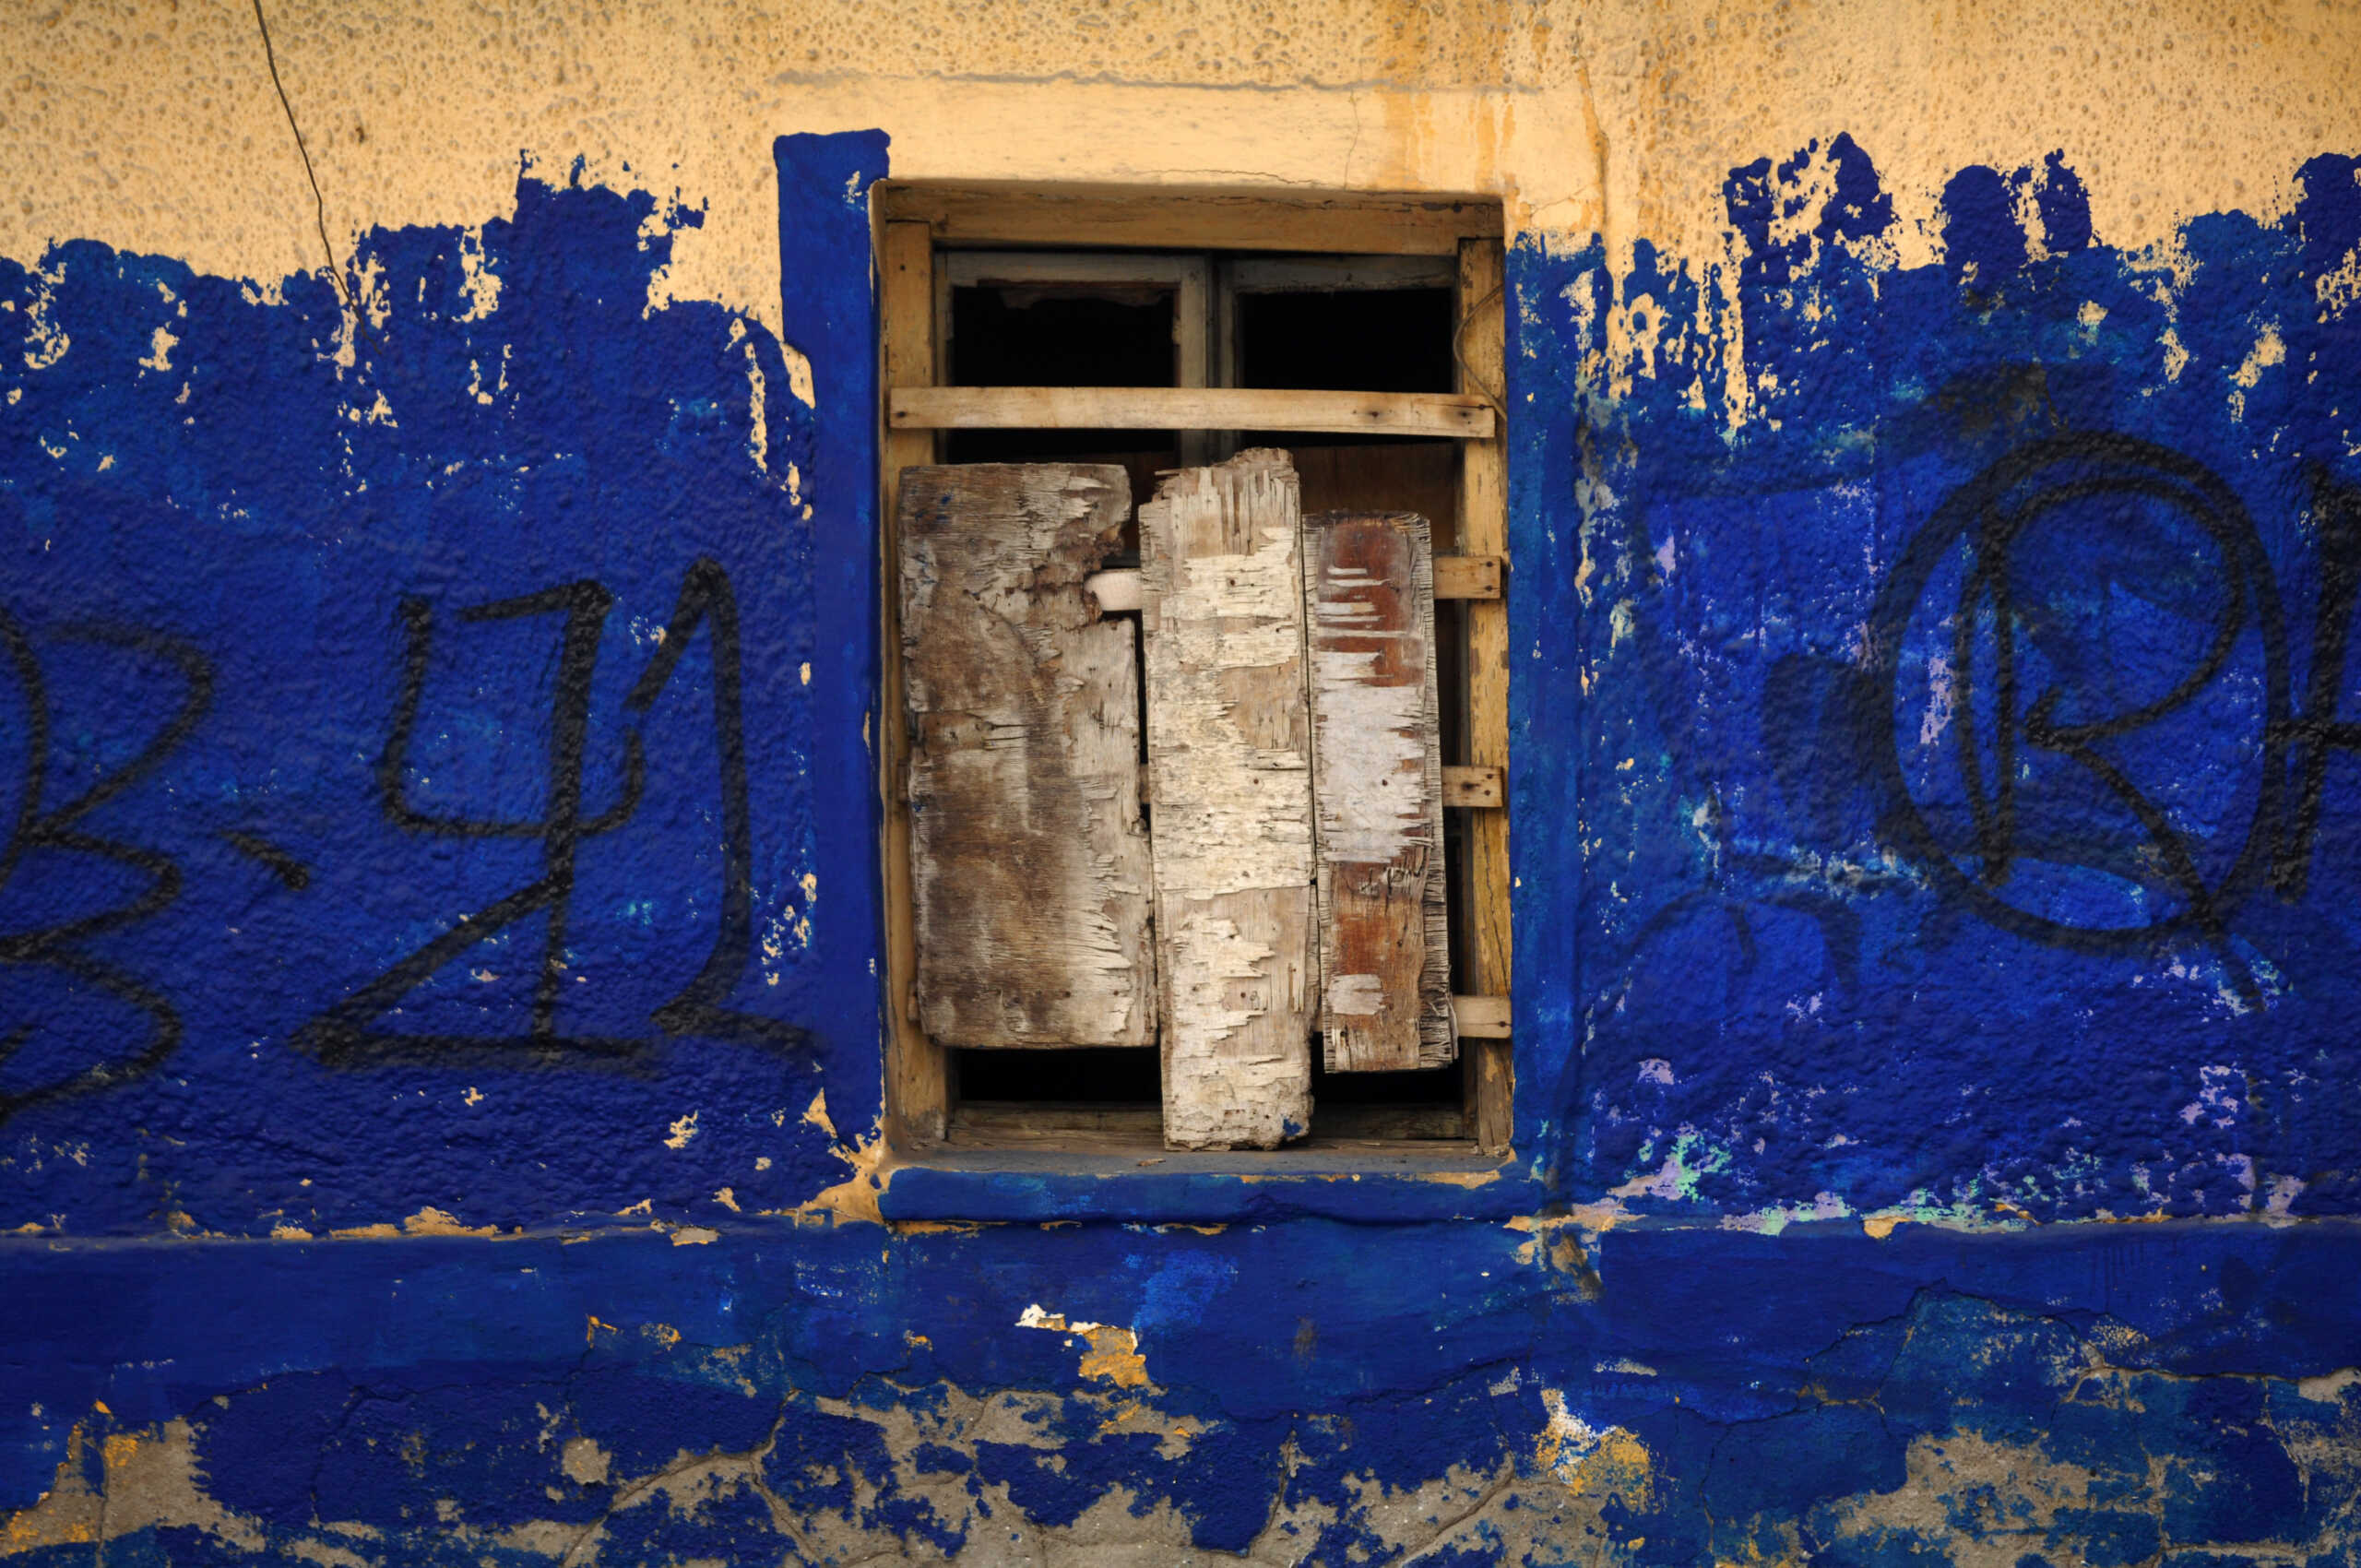 Σύγχρονο Κωσταλέξι στην Καλαμάτα: «Υποφέραμε τόσο καιρό» λέει η μητέρα της 29χρονης που ζει σε κλουβιά εδώ και 7 χρόνια